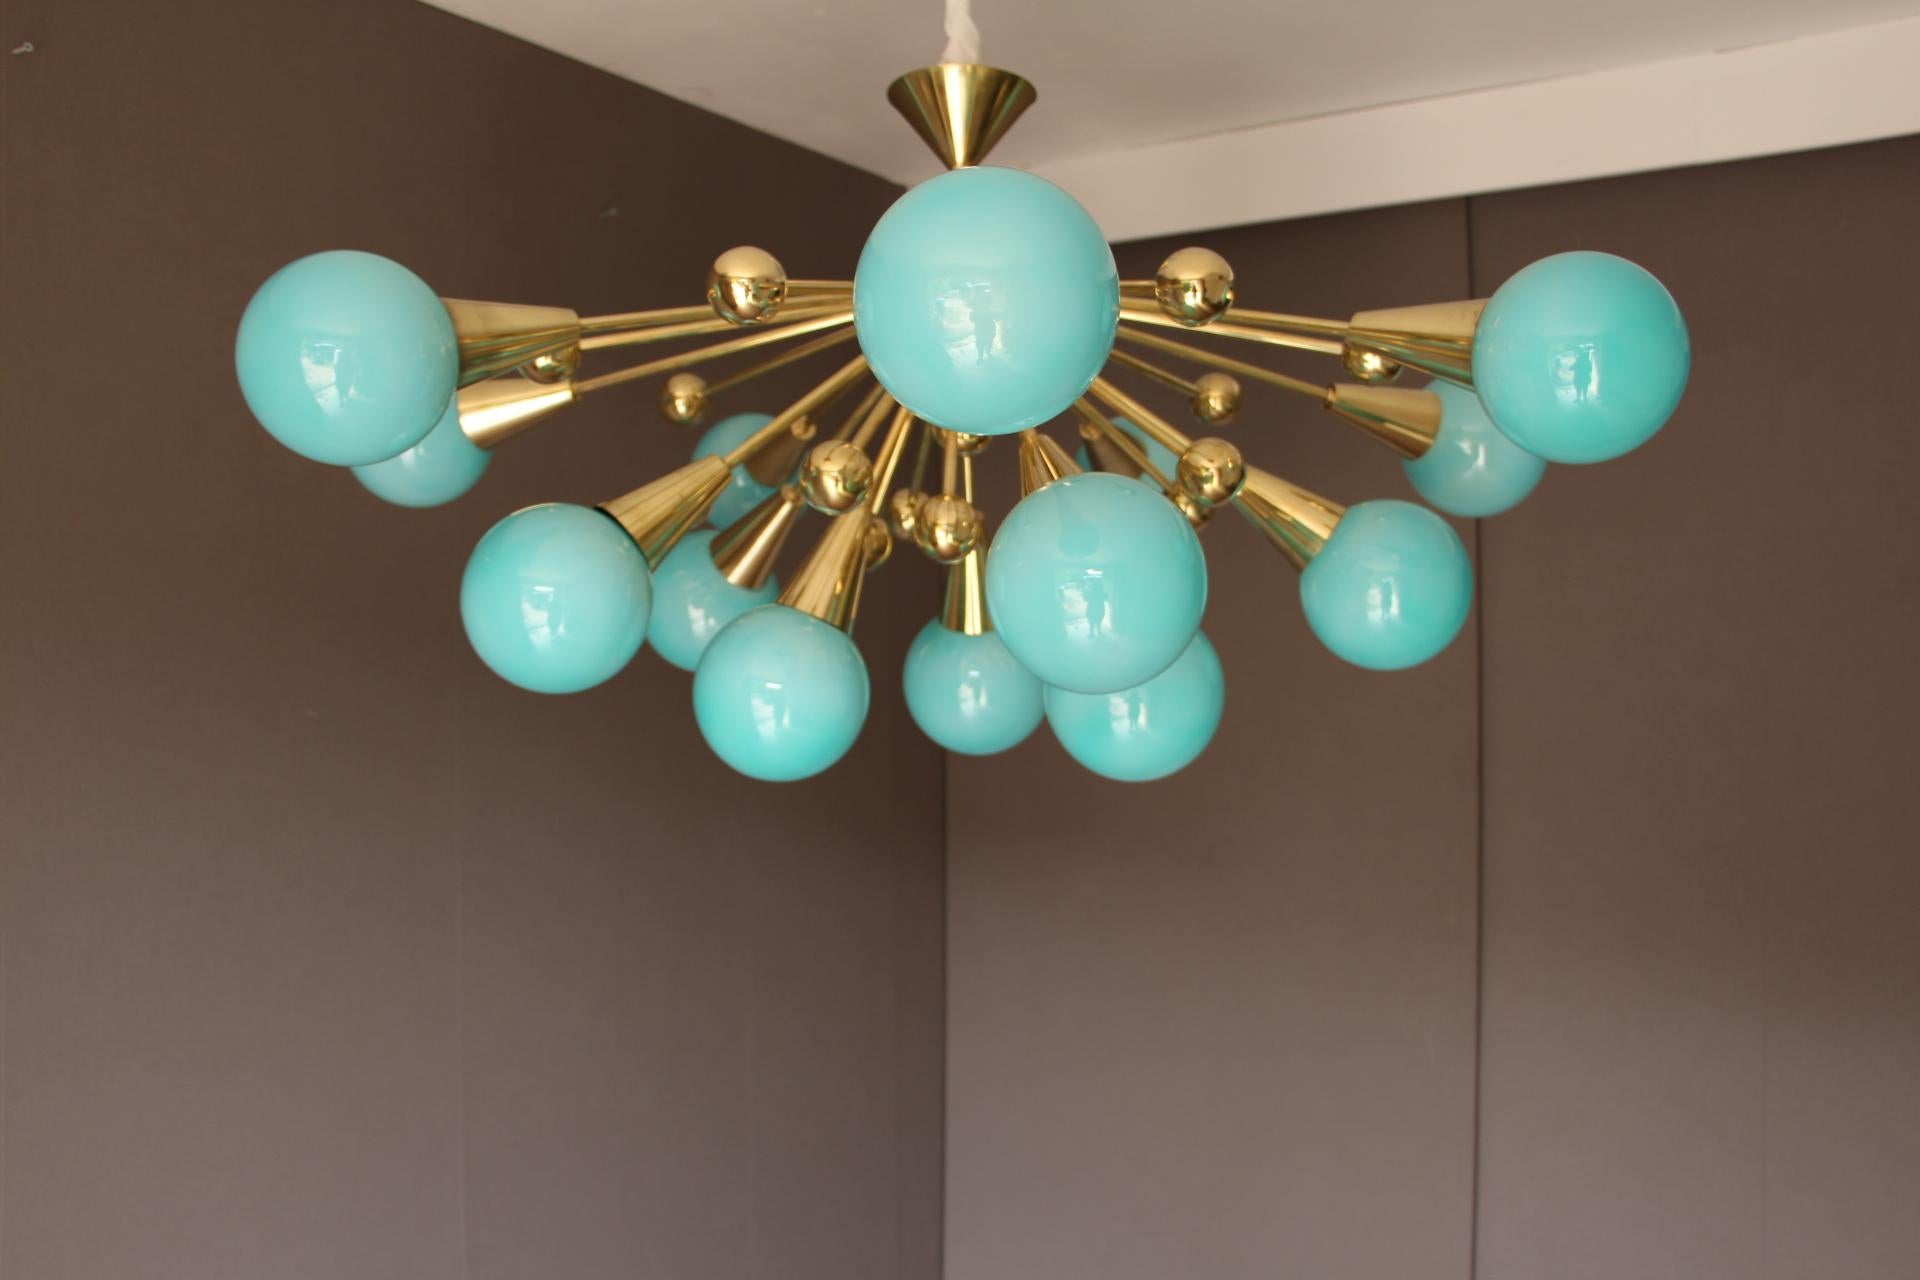 Ce lustre spectaculaire en laiton est composé de 15 globes en verre de Murano bleu turquoise et de 15 boules en laiton qui s'étendent sur des tiges en laiton à partir de son centre.
Lorsque la lumière est allumée, ses globes turquoise deviennent